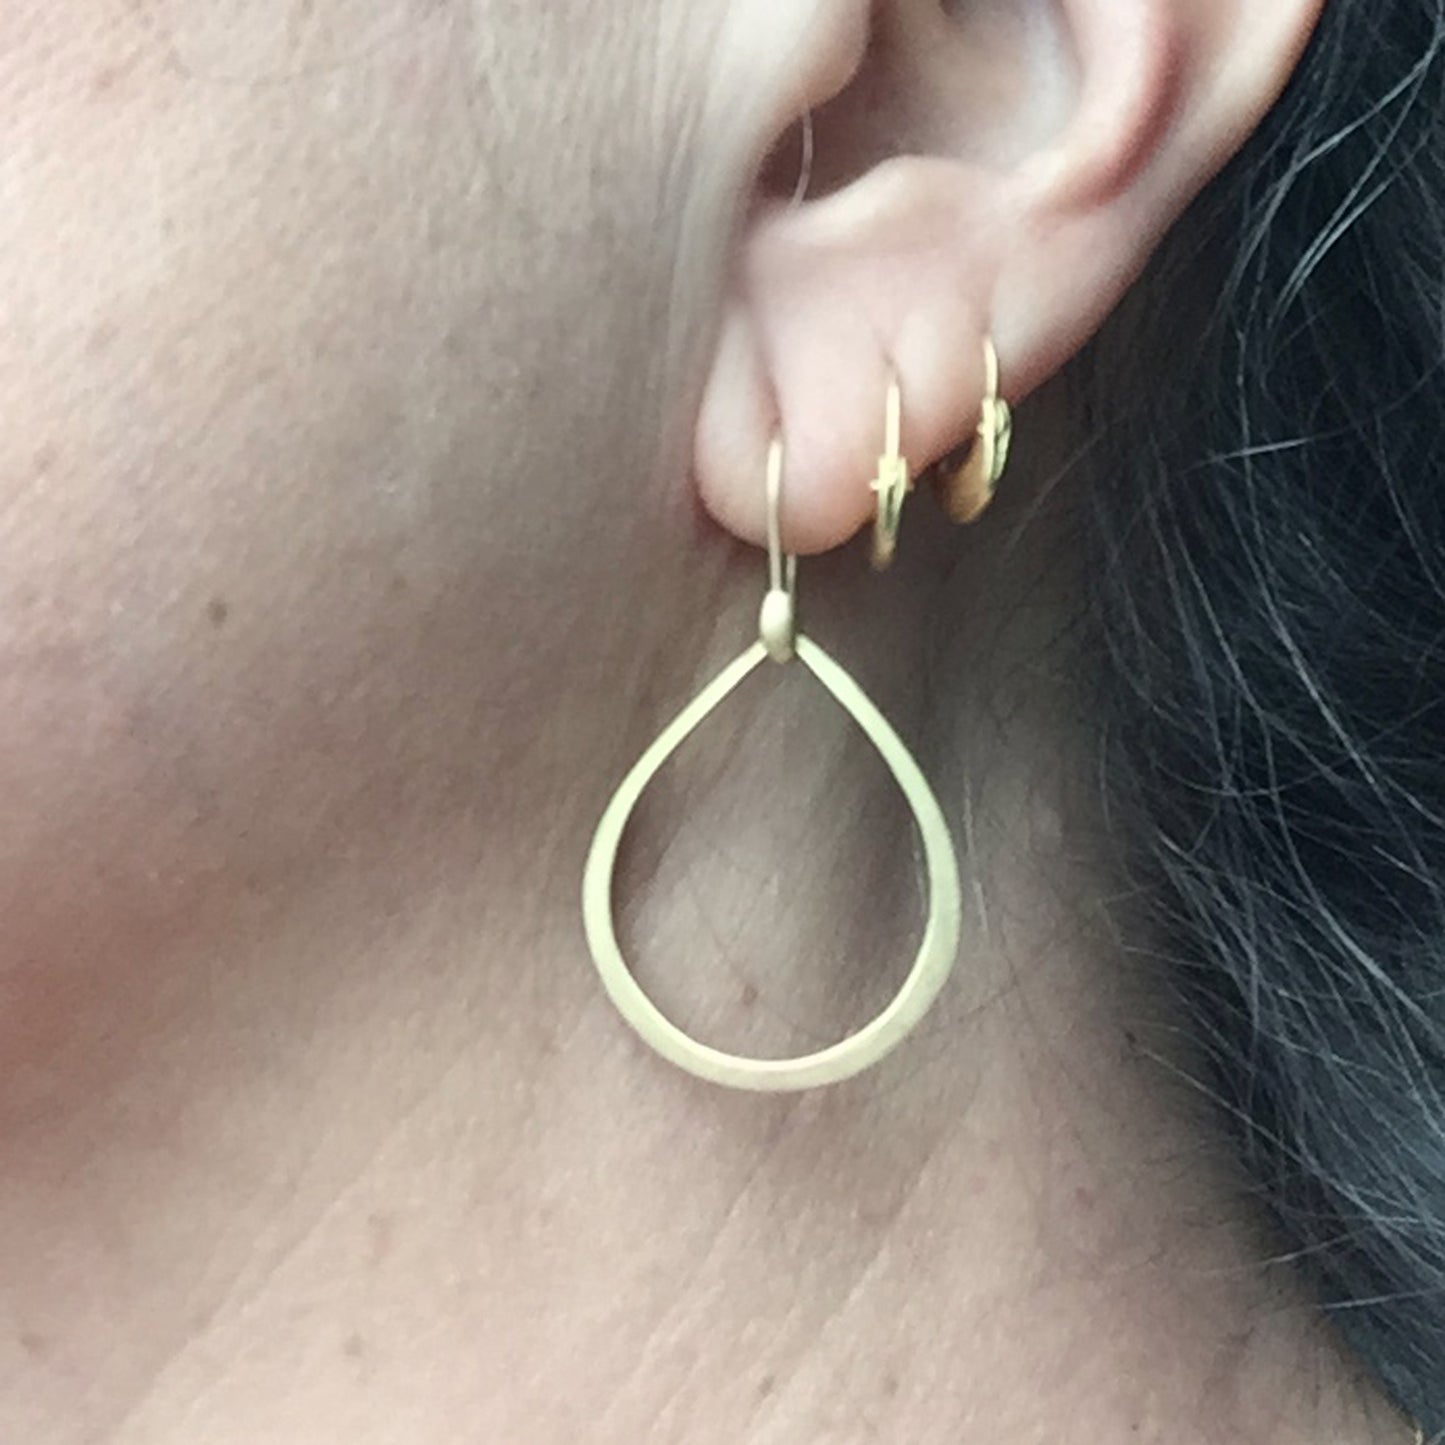 Dakri Hoop Earrings, on ear